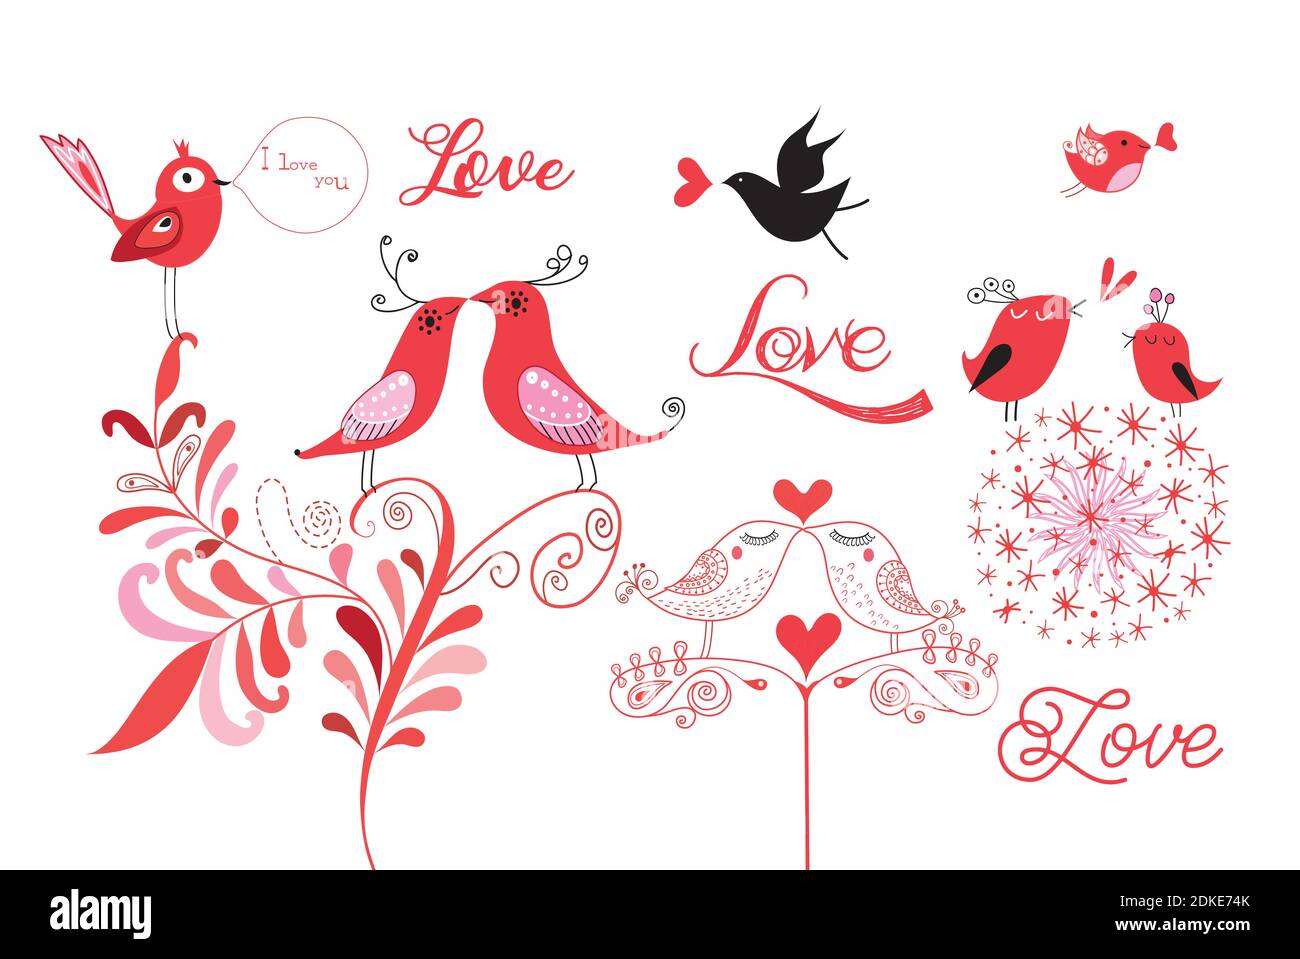 Lovebirds bella grafica isolato su sfondo bianco. Esempi di avebirds per San Valentino Illustrazione Vettoriale